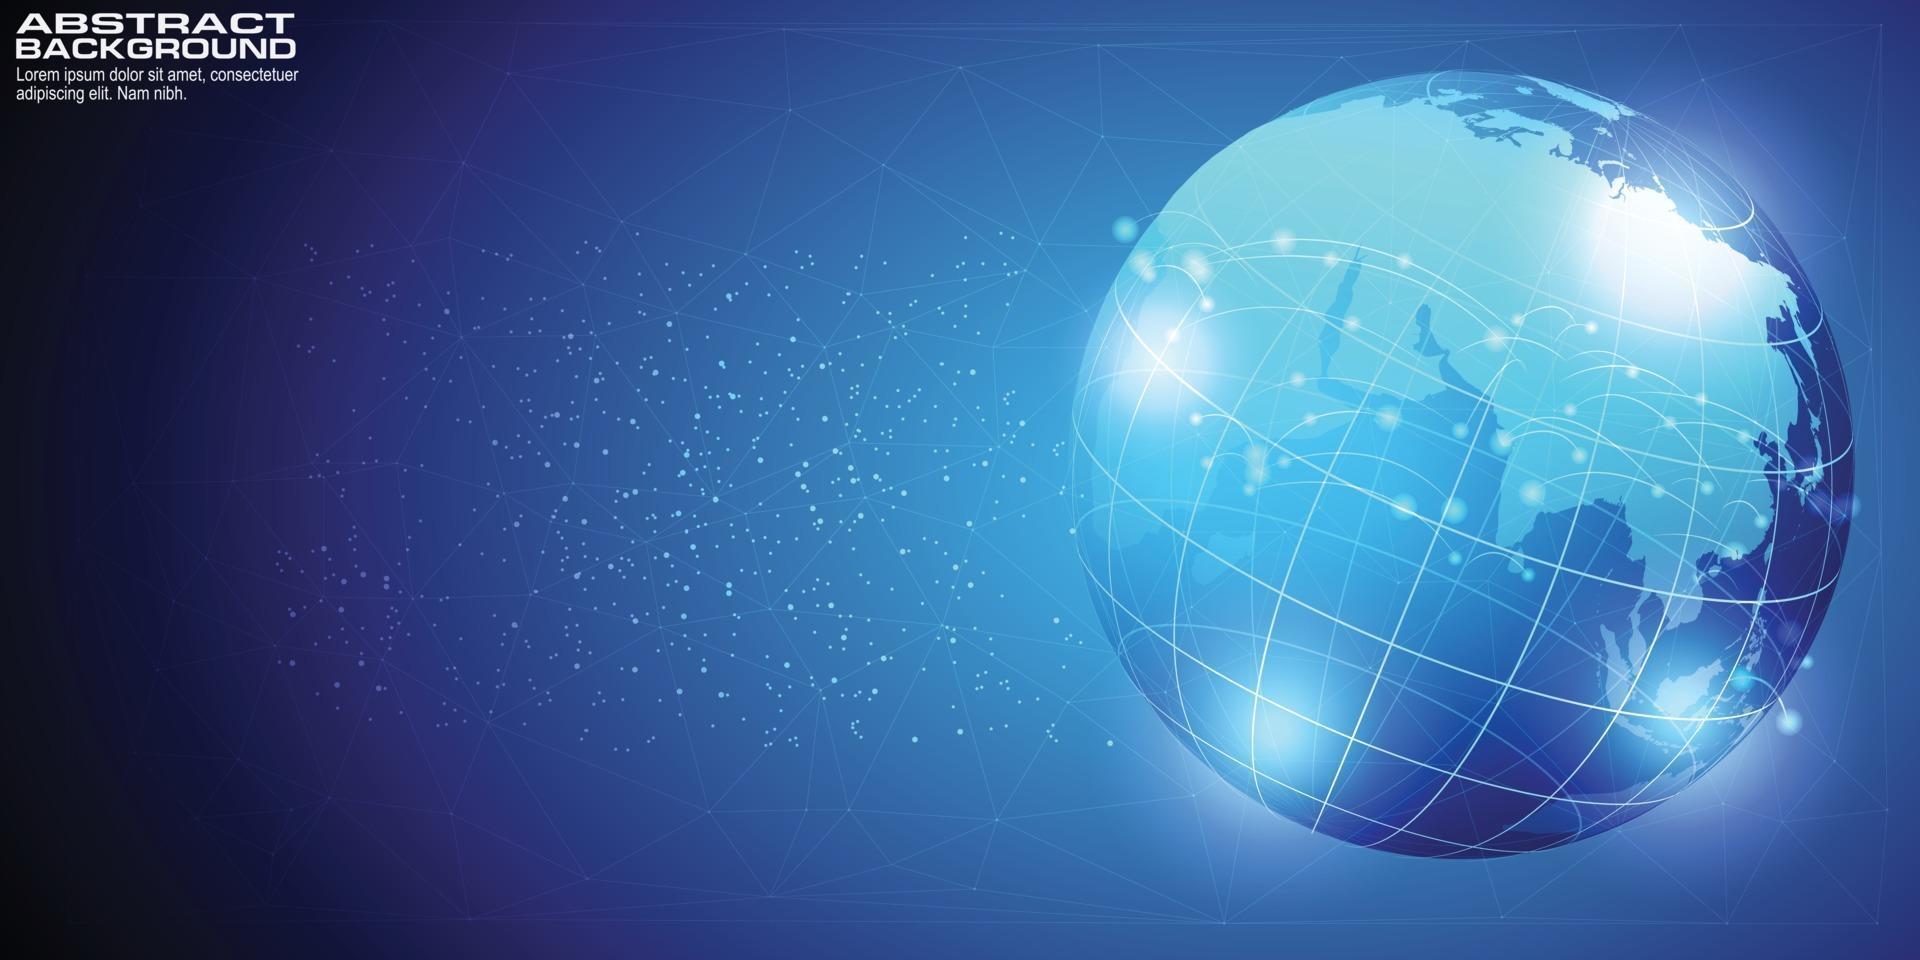 Fondo digital con punto de mapa mundial concepto de conexión de red global de negocio global vector